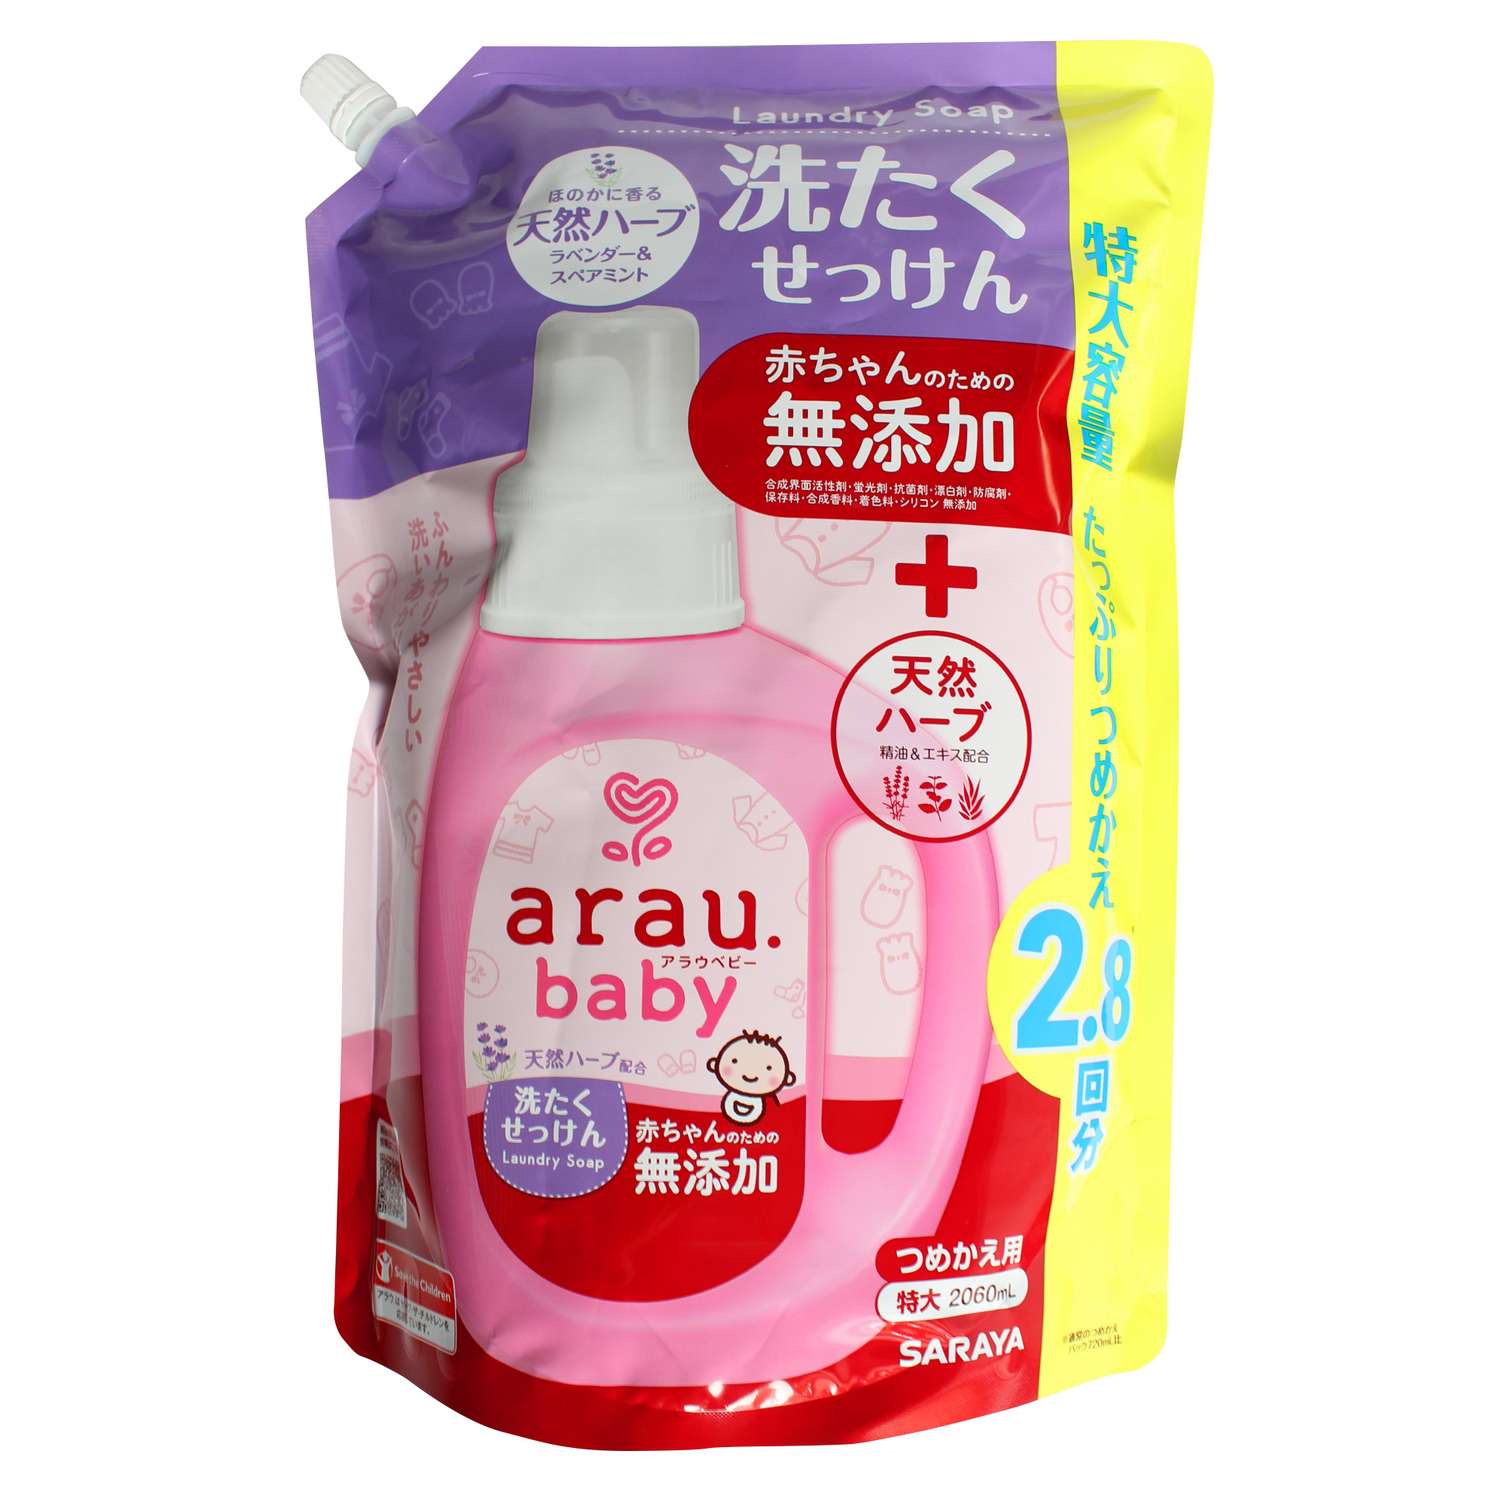 Жидкость для стирки Arau baby картридж 2060 мл - фото 1